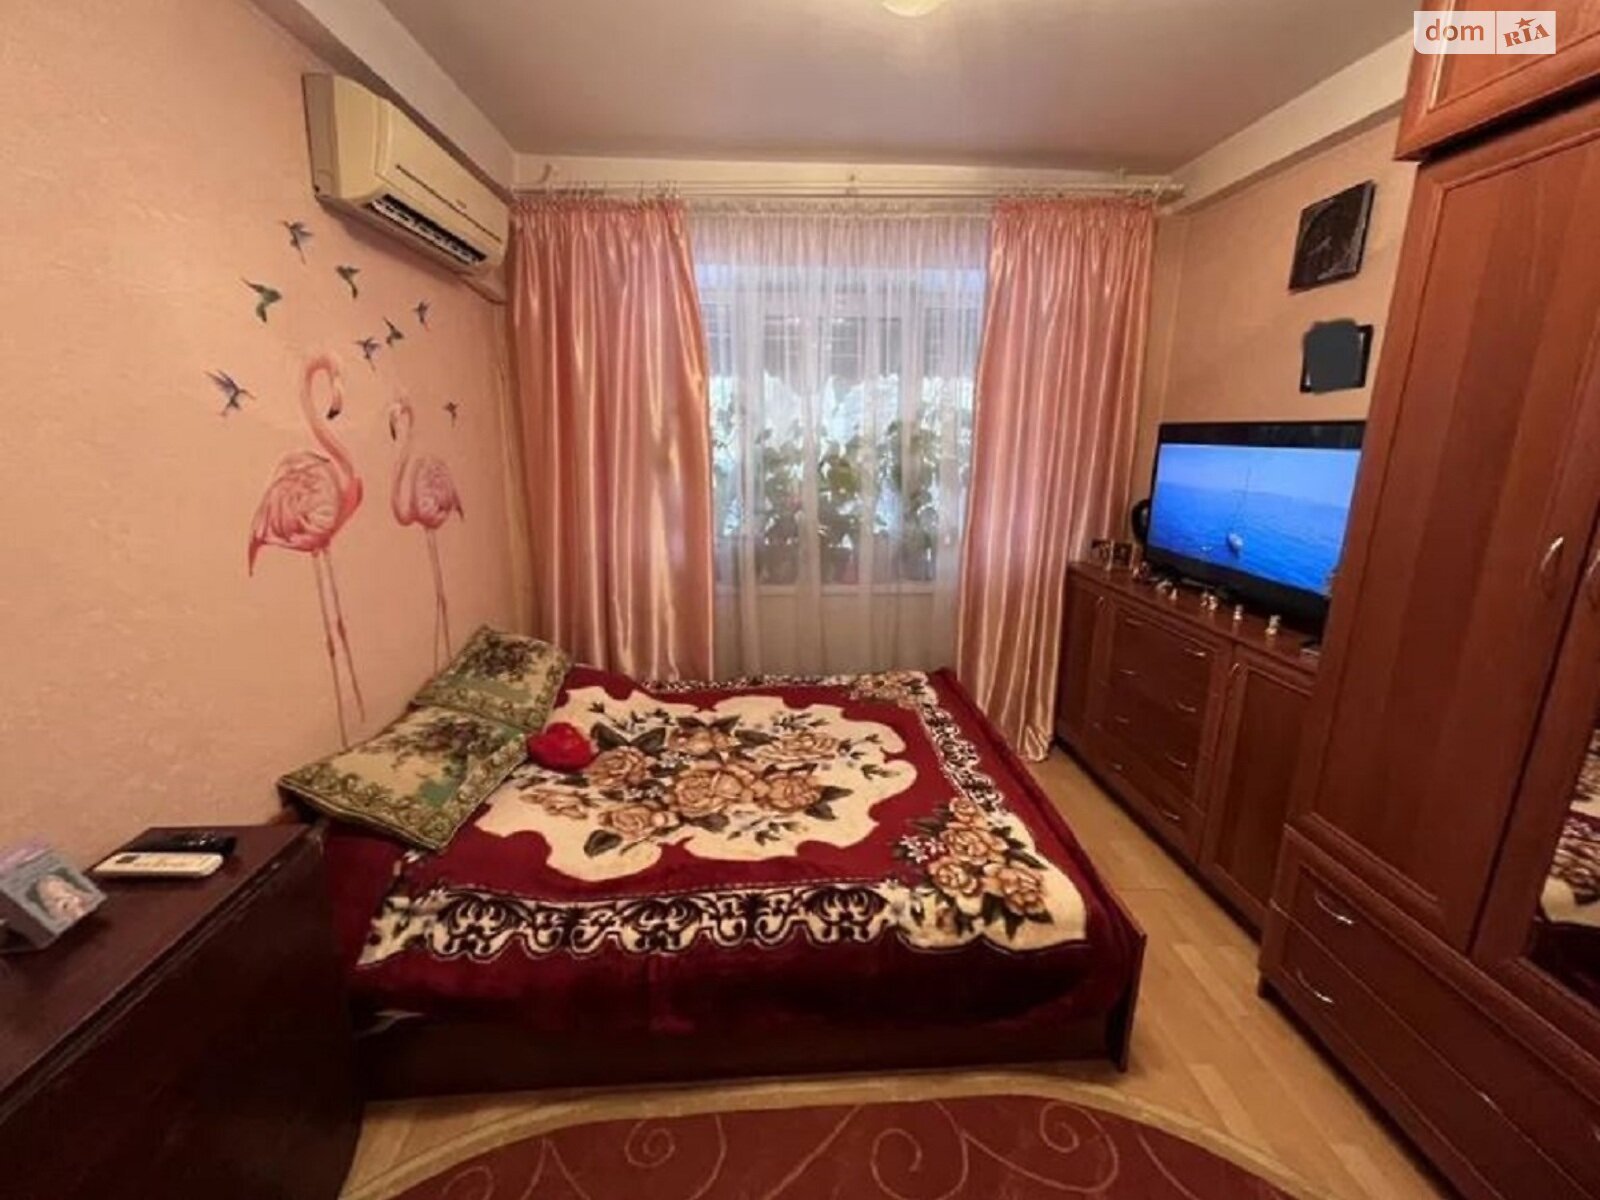 Кімната в Одесі на вул. Маршала Малиновського в районі Хаджибейський на продаж фото 1